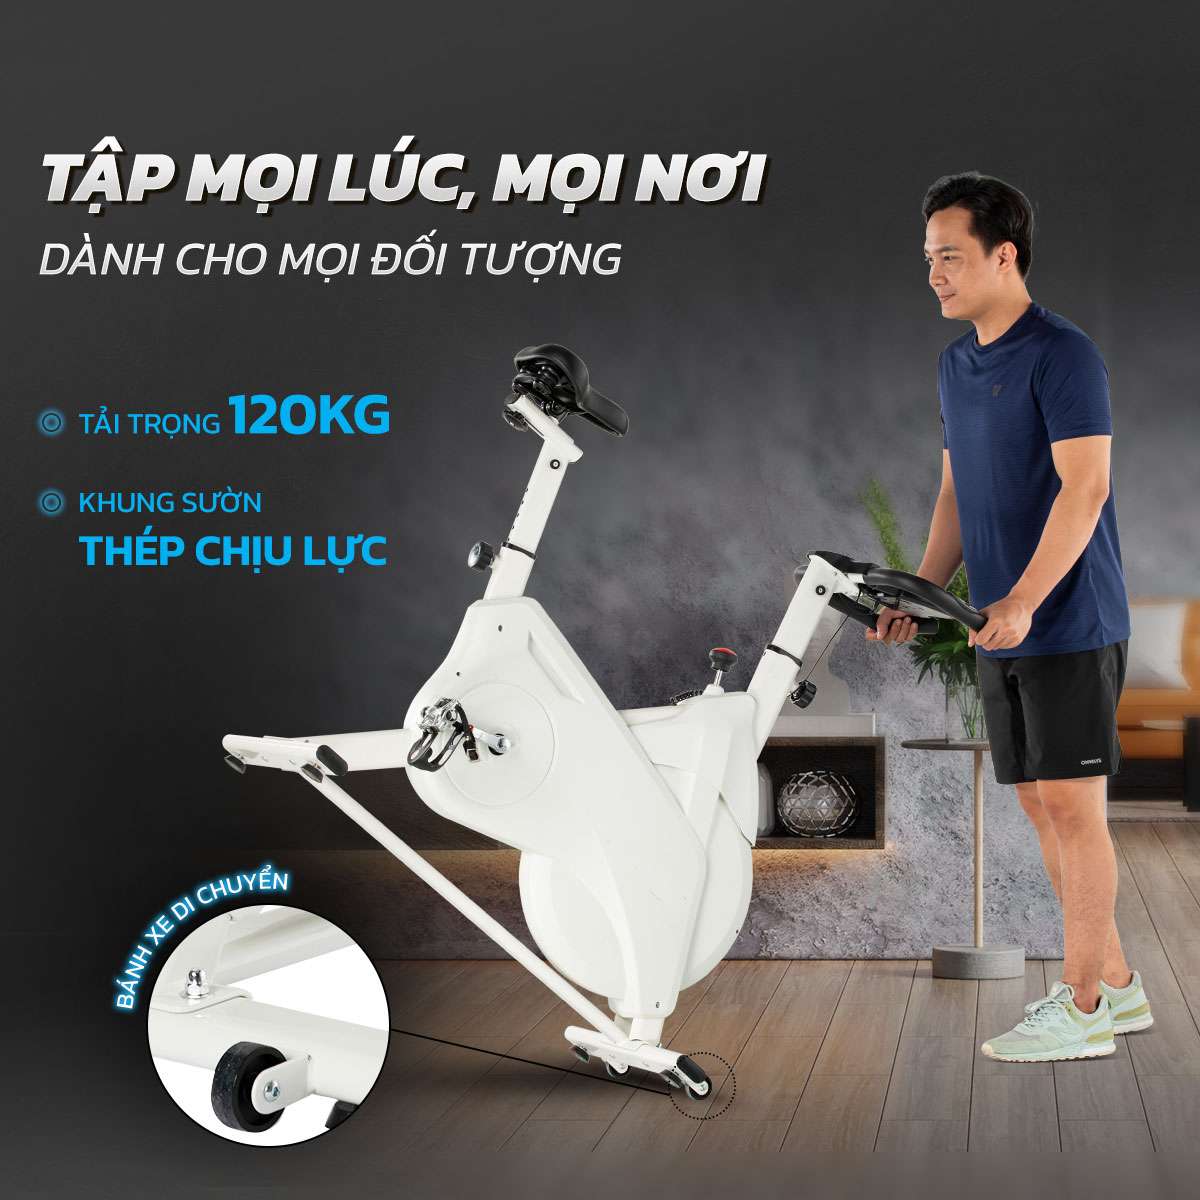 Địa chỉ mua xe đạp tập thể dục ở Đà Nẵng đảm bảo chất lượng